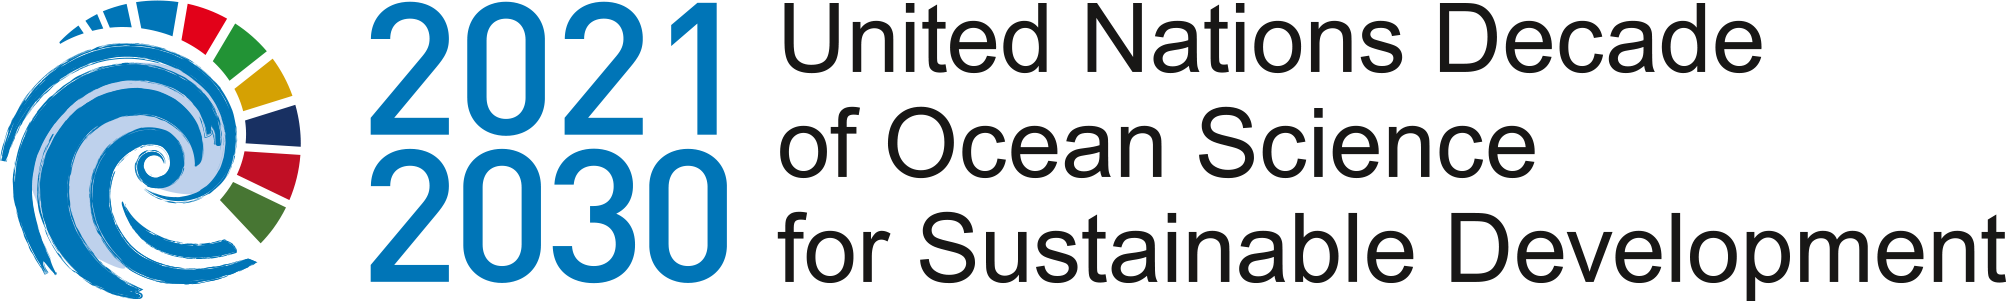 UN Ocean Decade logo